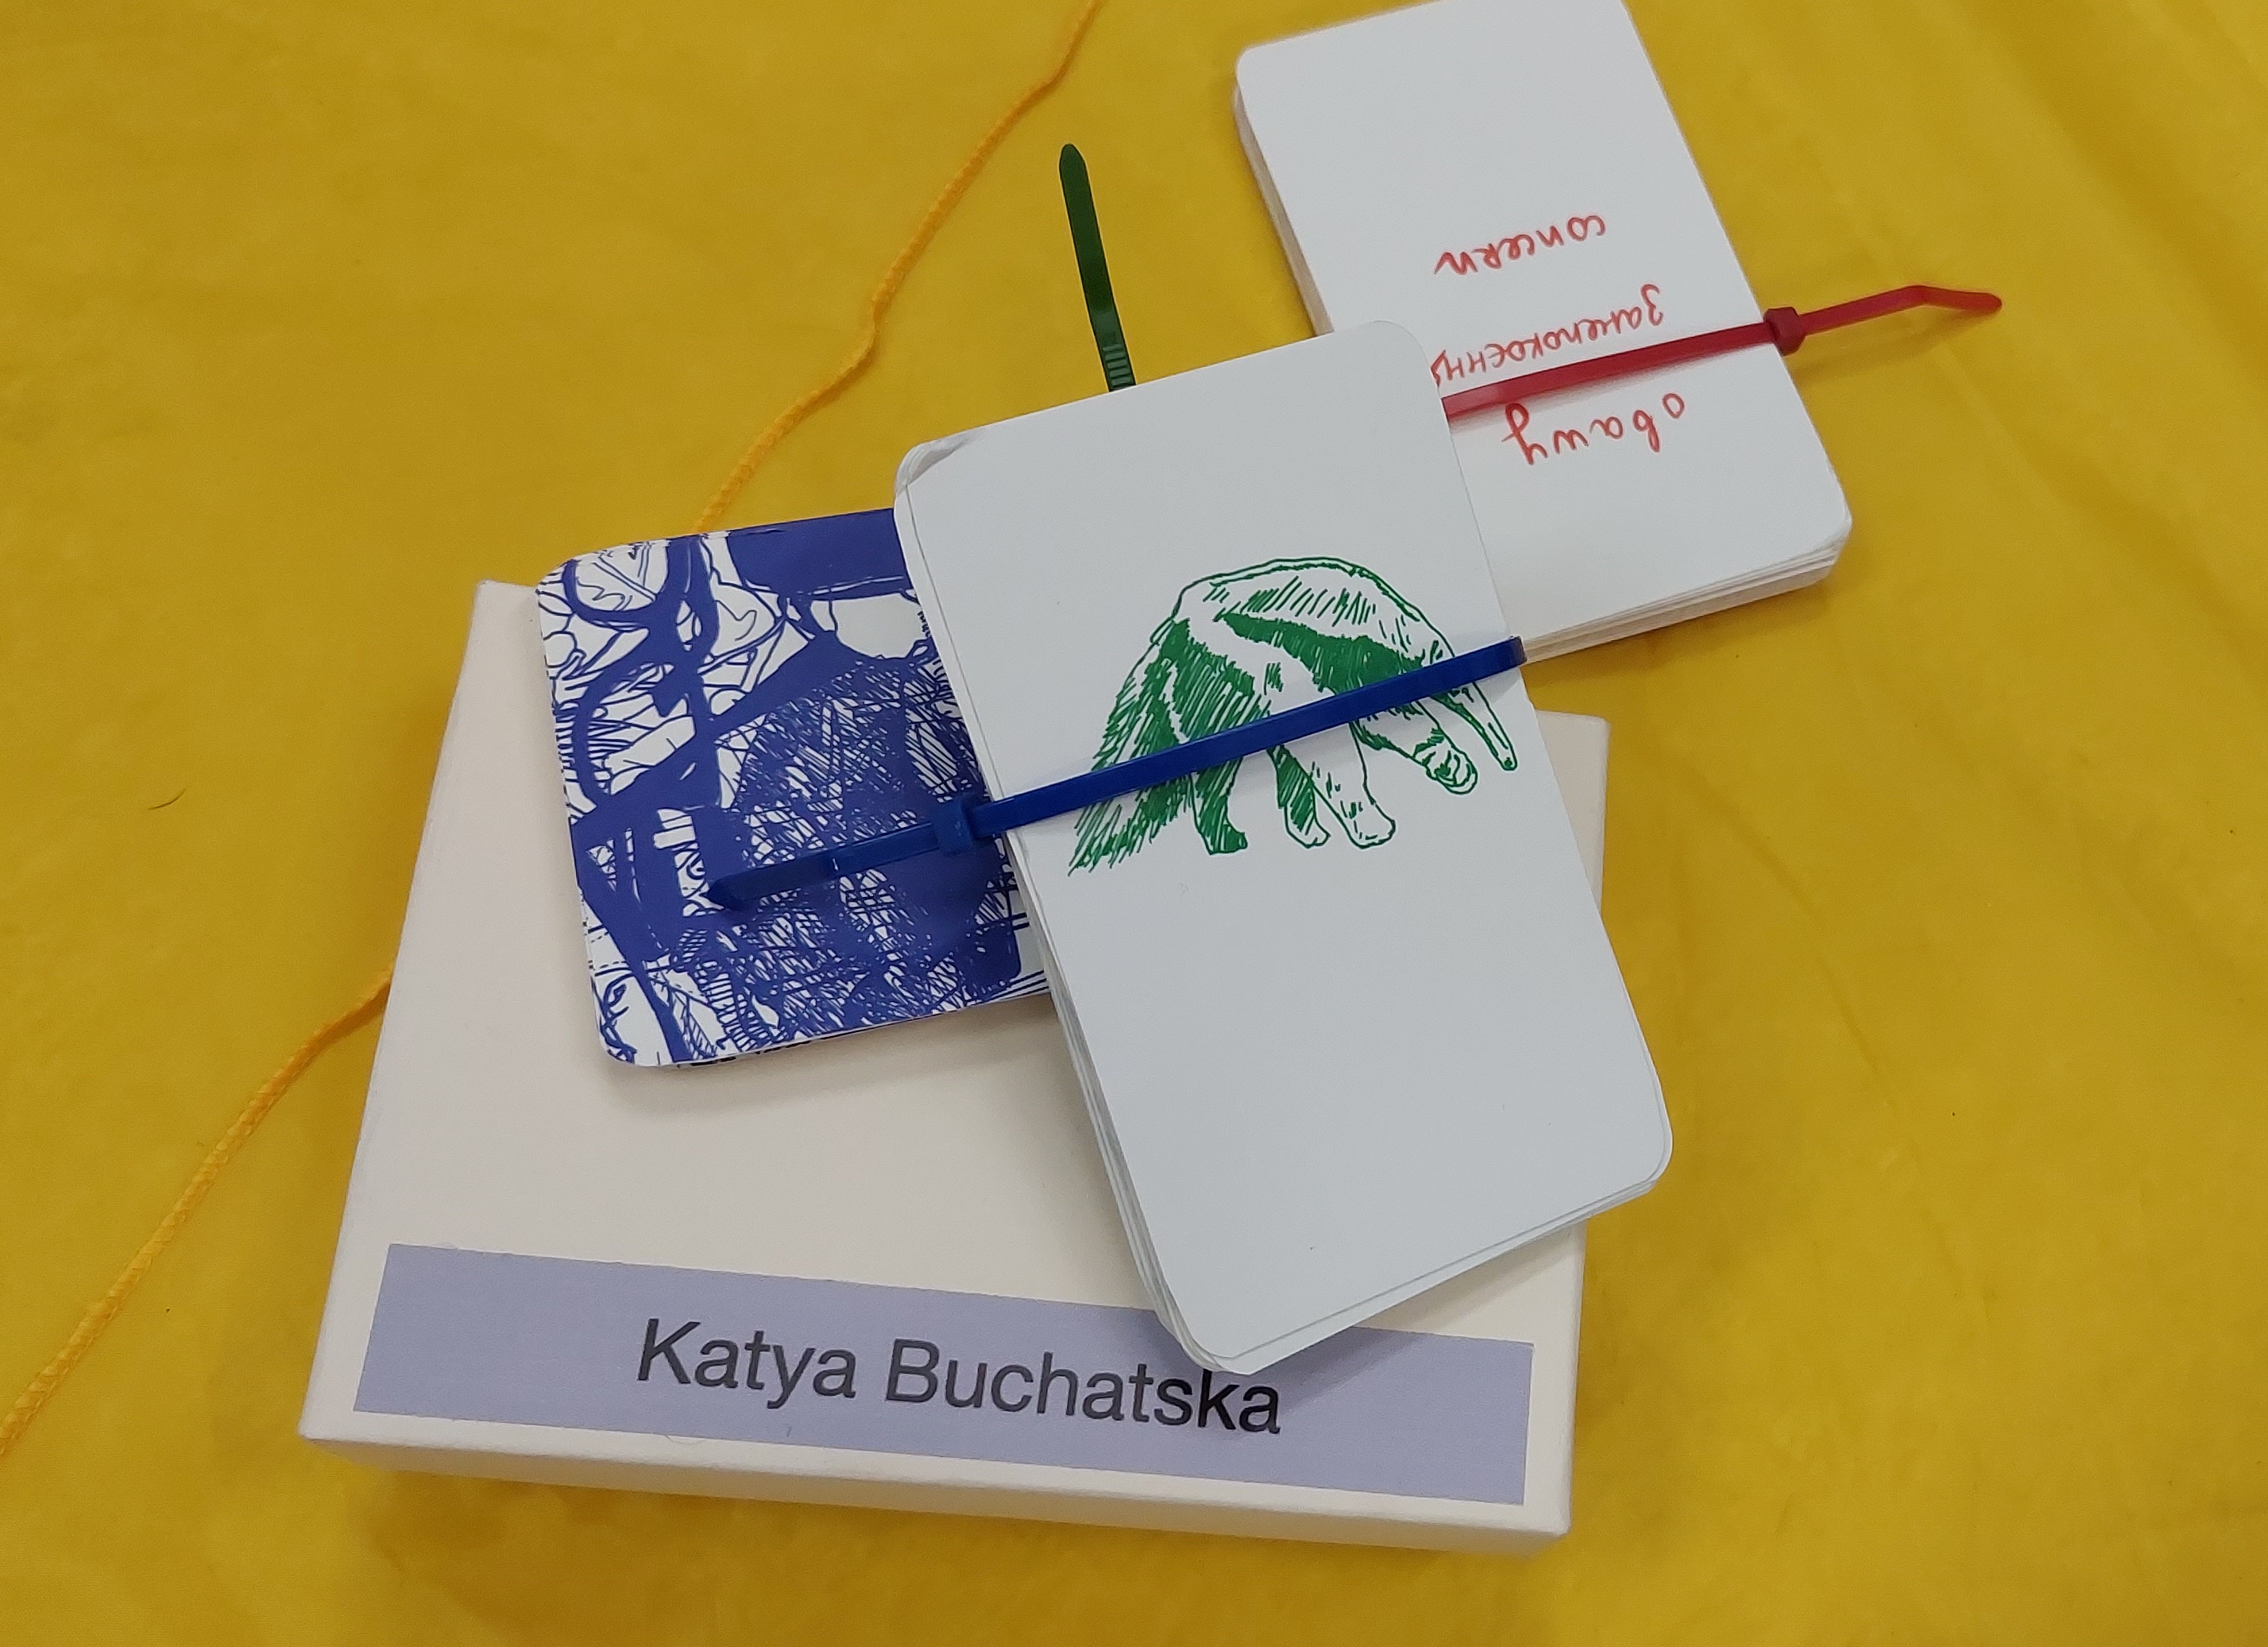 Karty autorstwa Katyi Buchatskiej leżące na żółtej chuście.